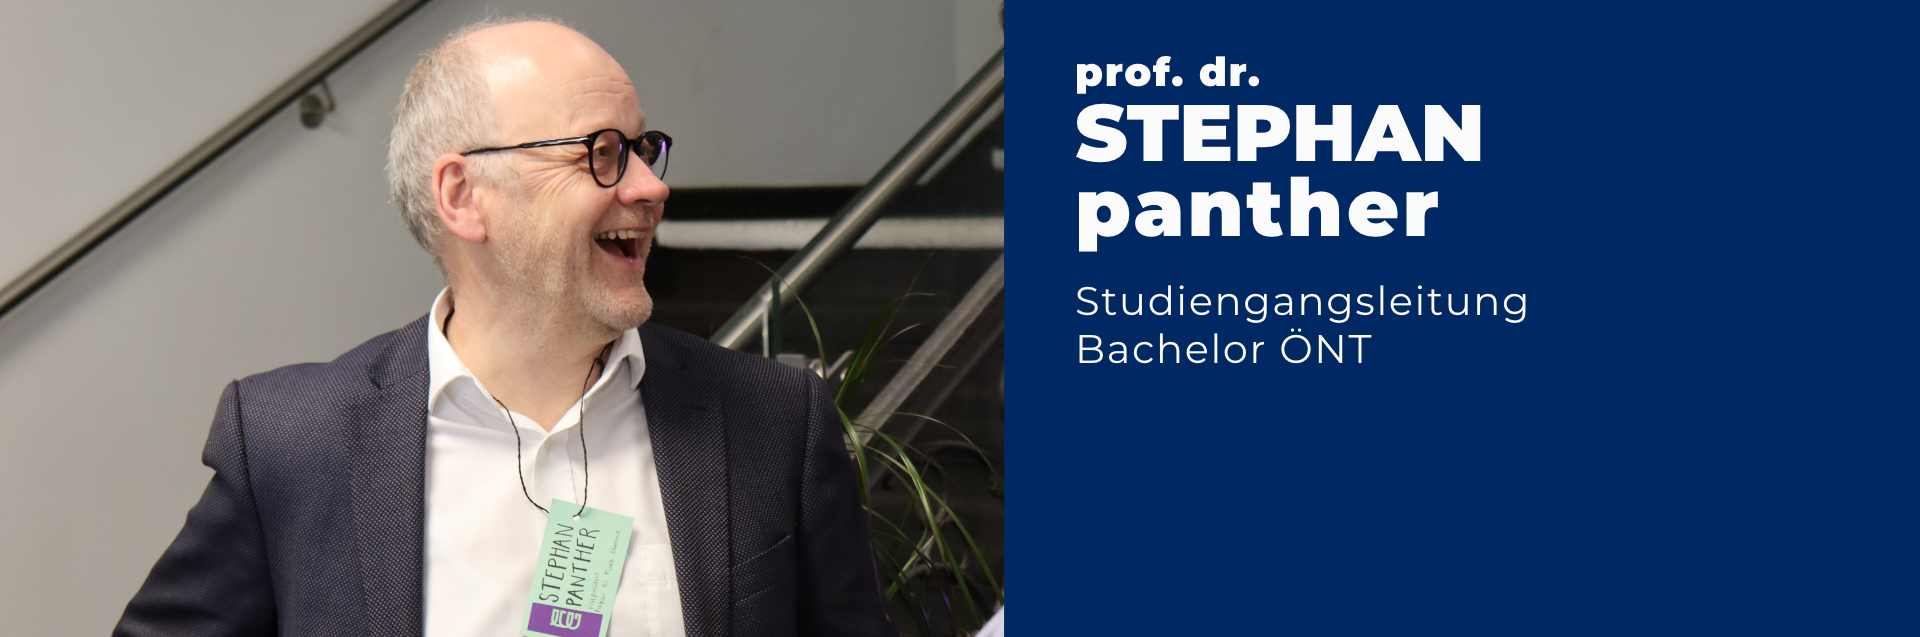 Professor Doktor Stephan Panther ist Studiengangsleiter des Bachelors Ökonomie - Nachhaltigkeit - Transformation. Auf dem Foto trägt er ein weißes Hemd, ein graues Sakko, eine Brille und lacht herzlich. 